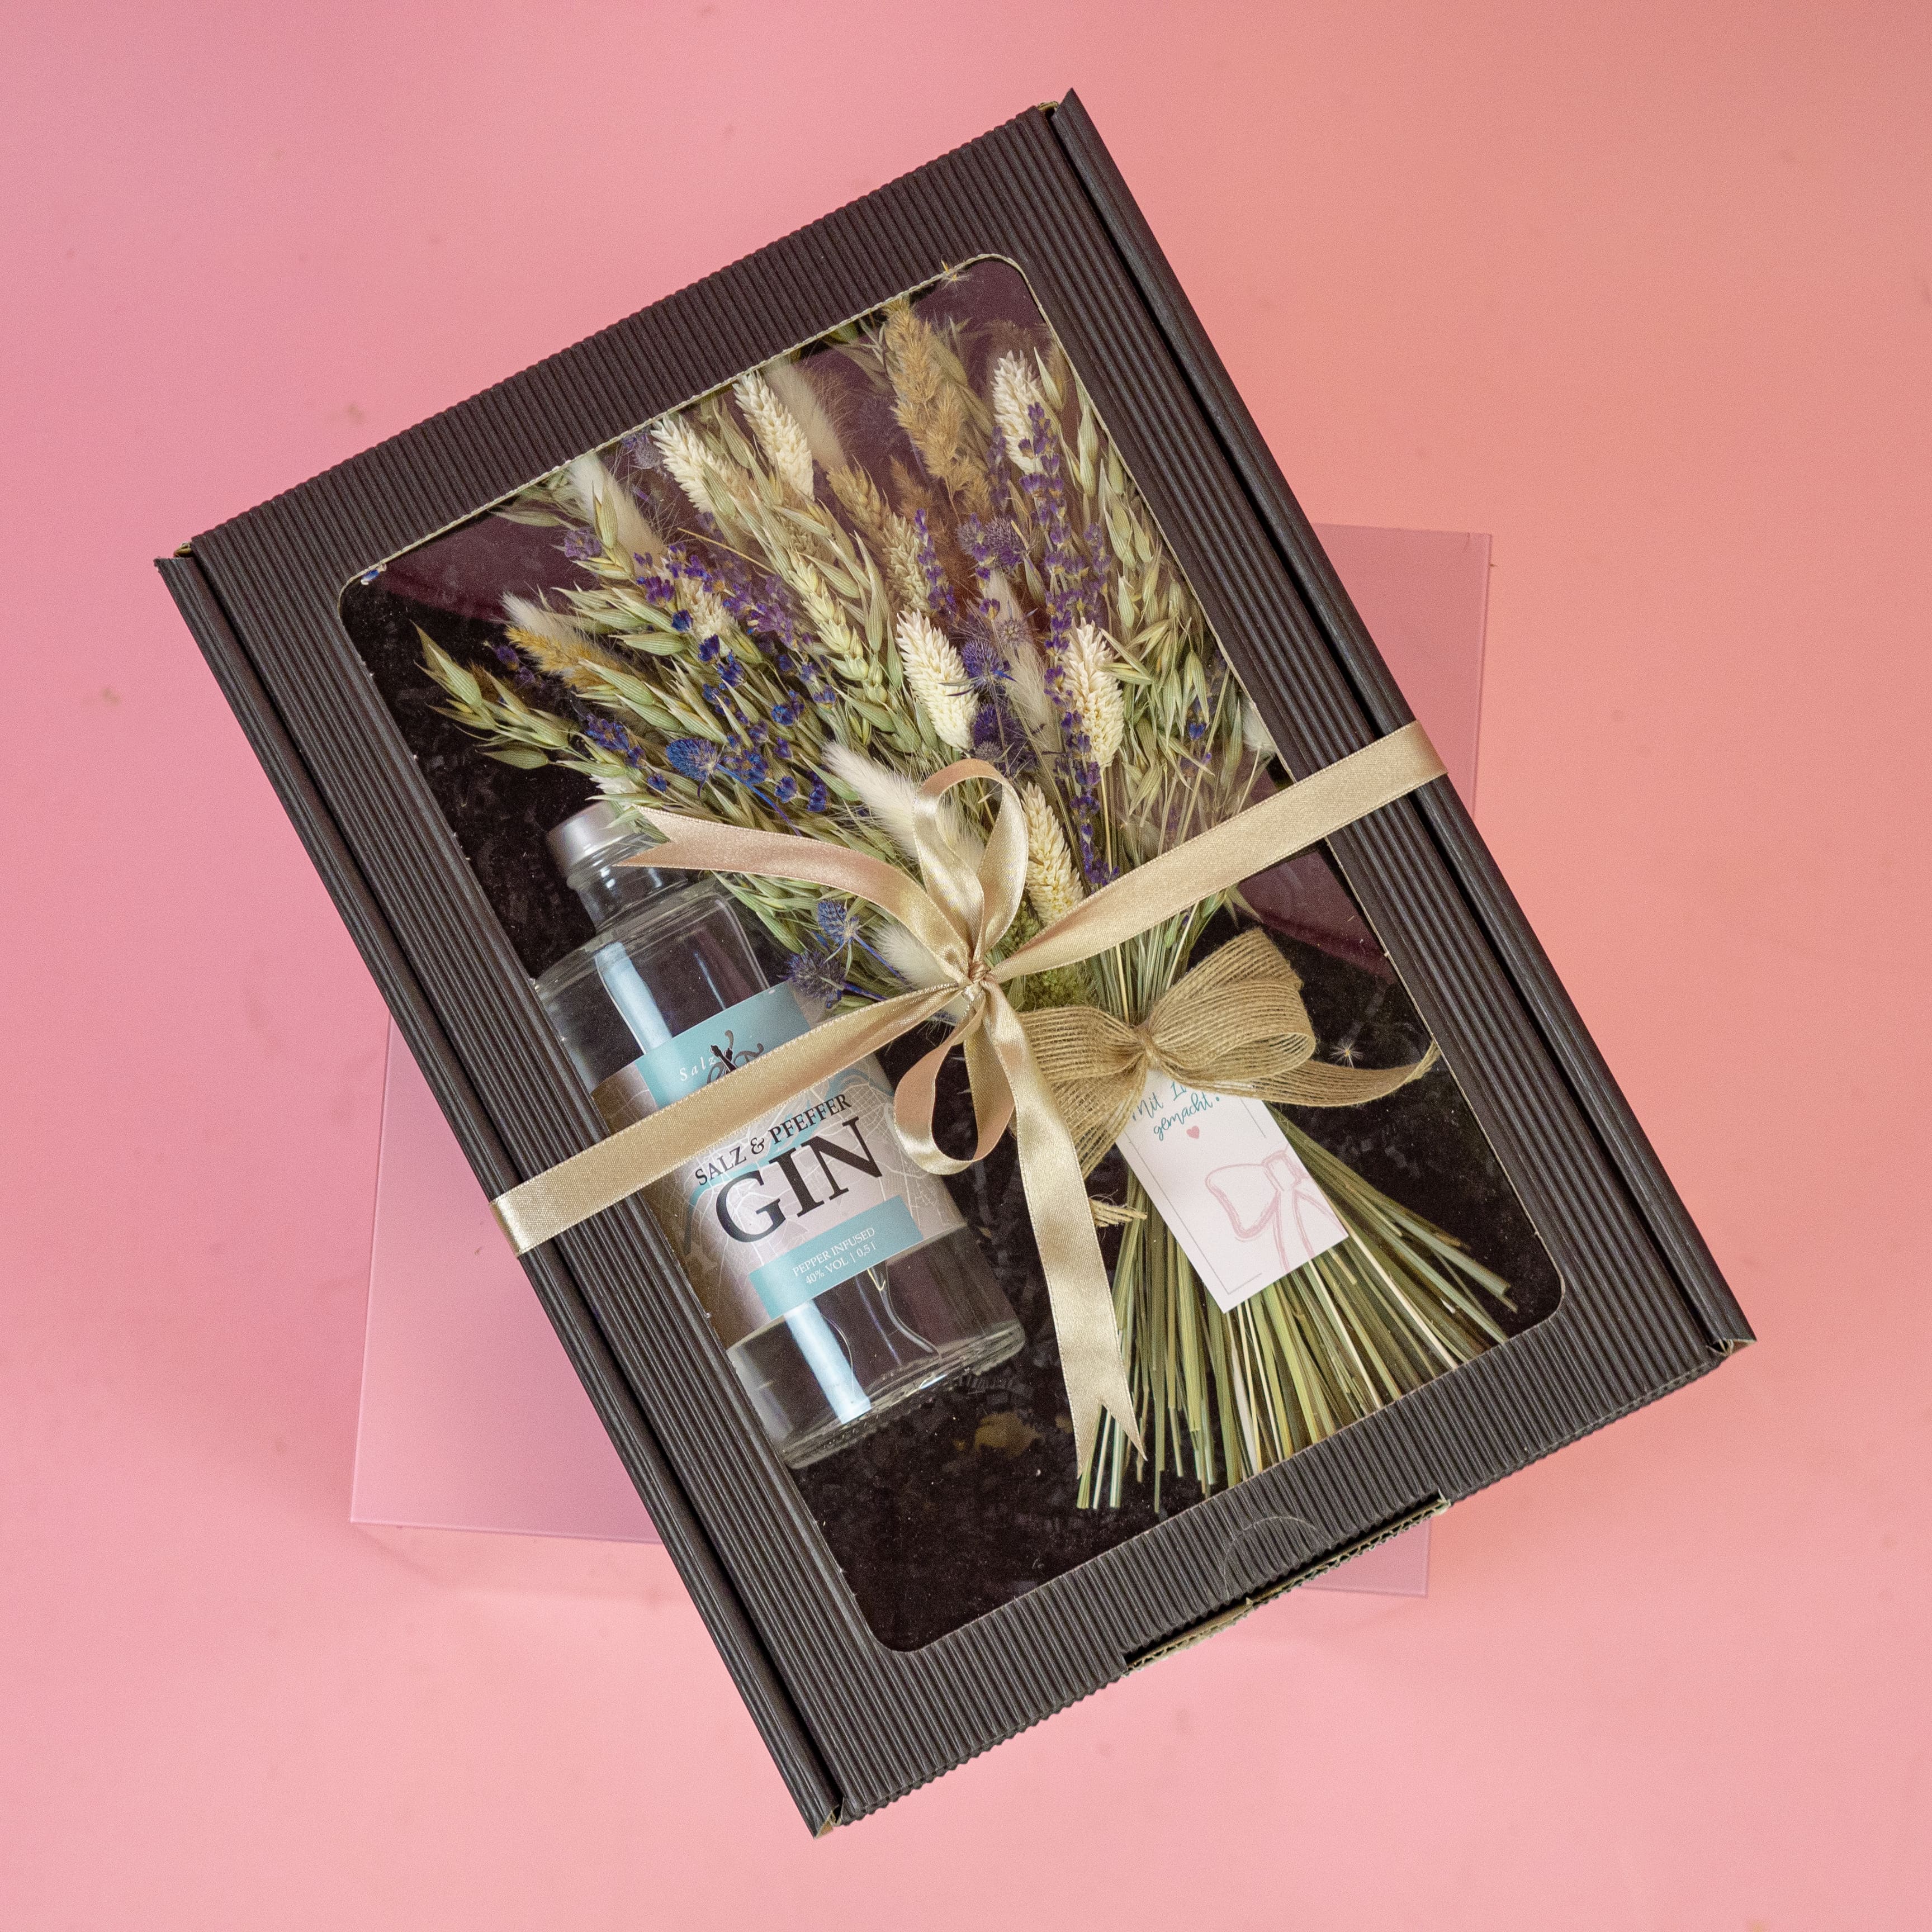 trockenblumen-strauss-gin-oliven-oel-geschenk-box-globaldesire-salzpfeffer